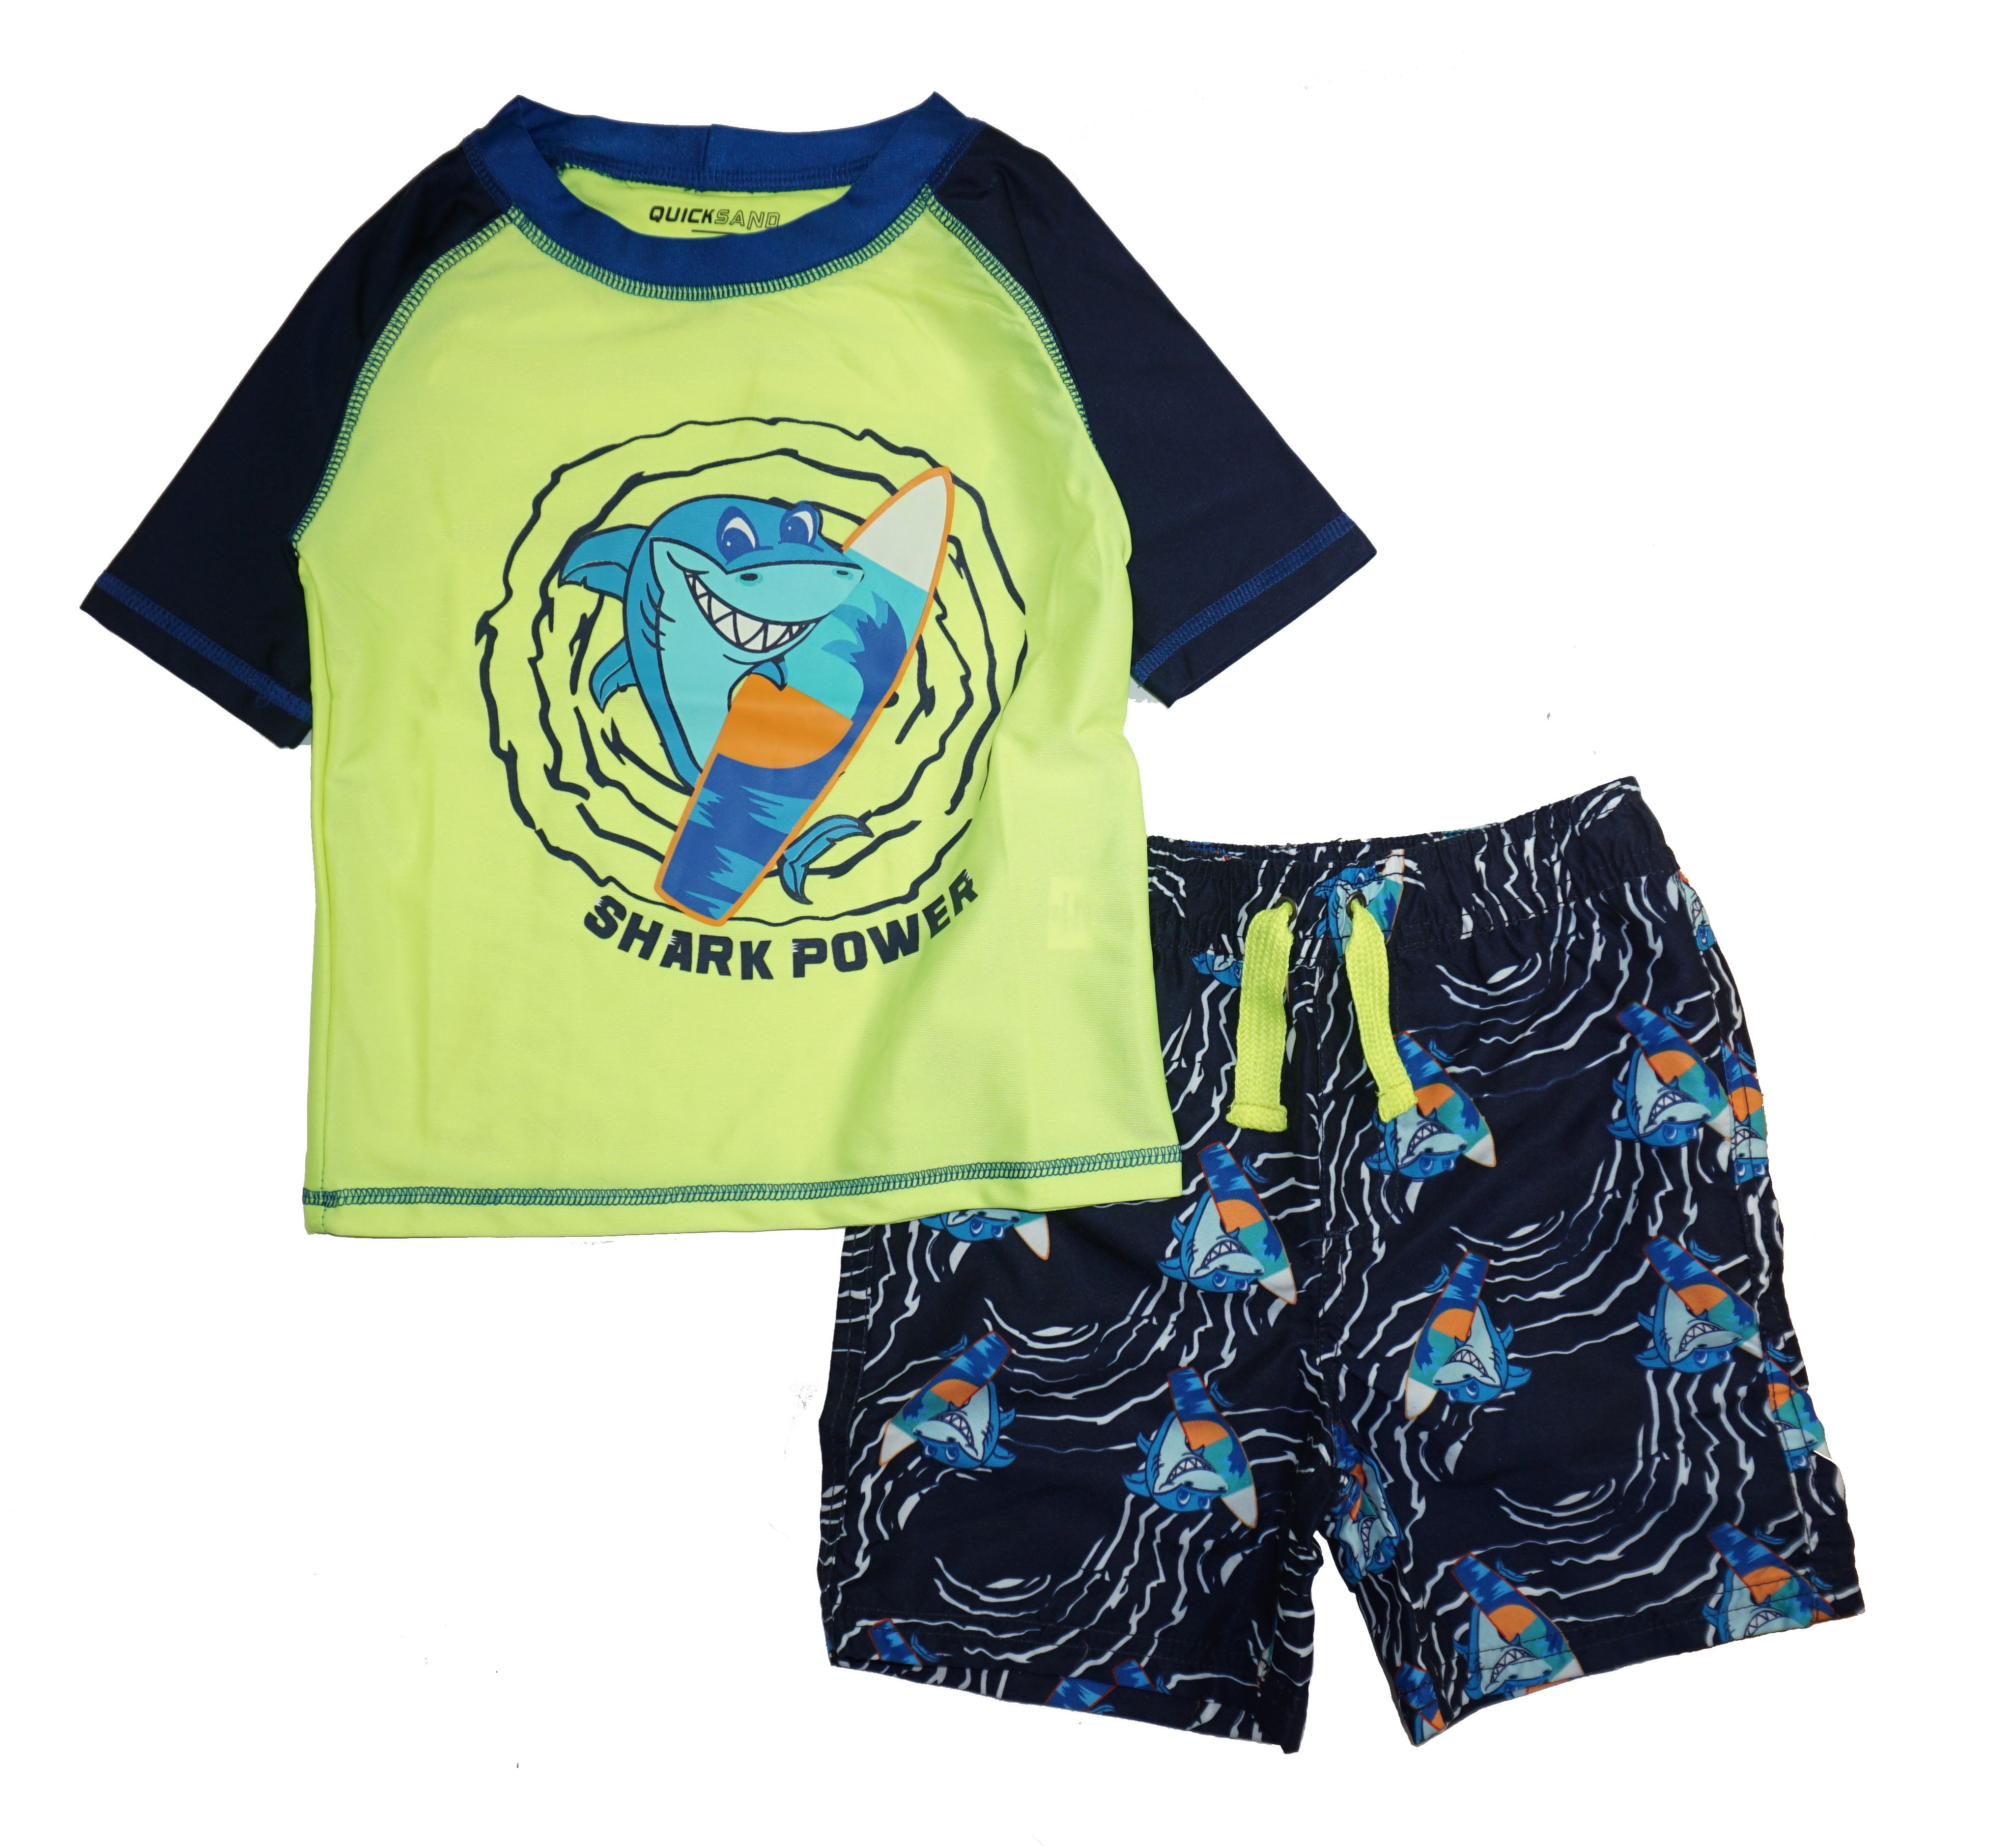 Osh Kosh B'gosh Infant Boys 2pc Rashguard Swim Short Set Size 12M 18M 24M 